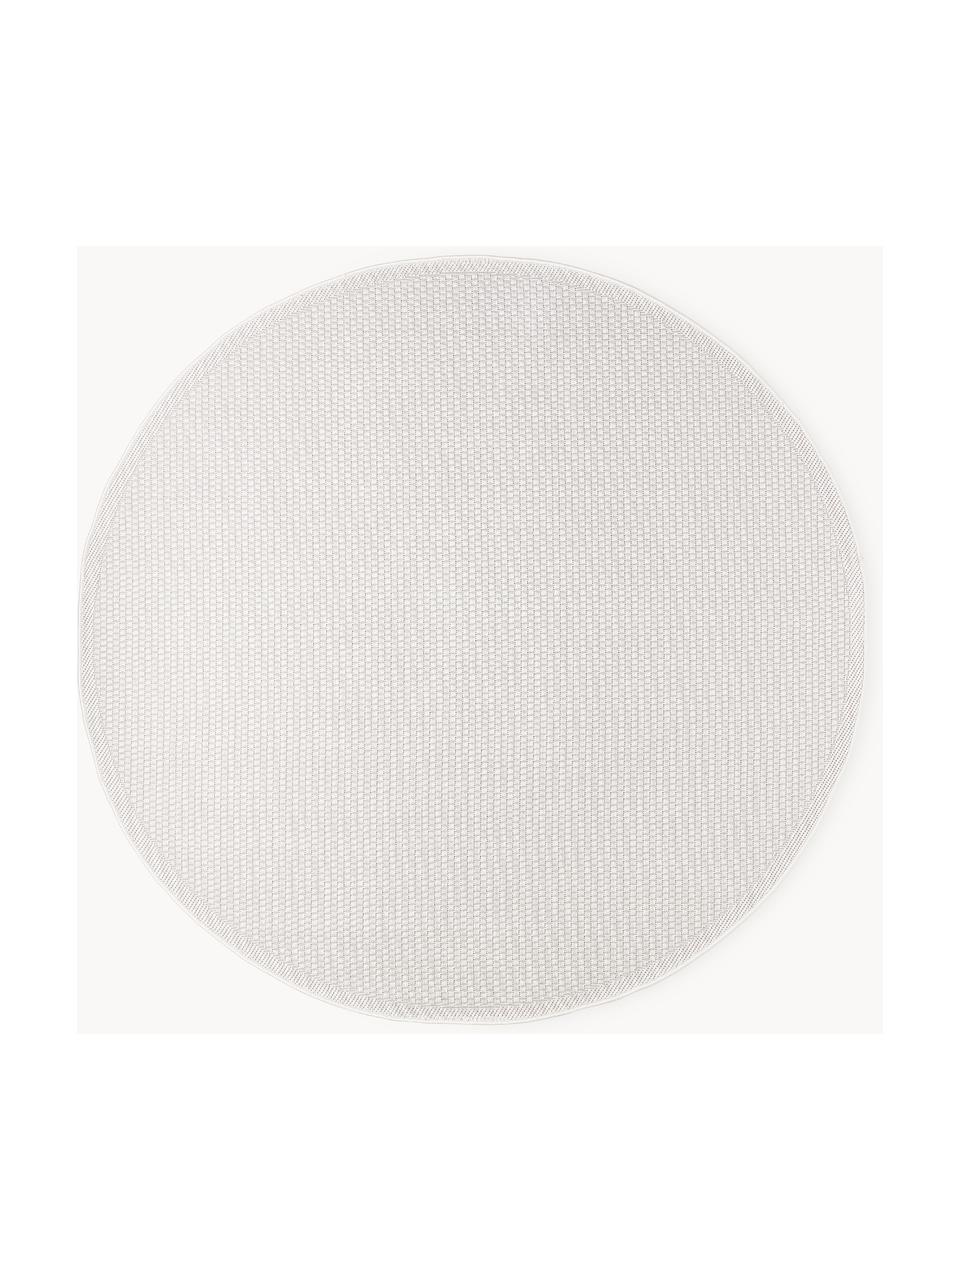 Tapis rond intérieur-extérieur Toronto, 100 % polypropylène, Blanc crème, Ø 120 cm (taille S)